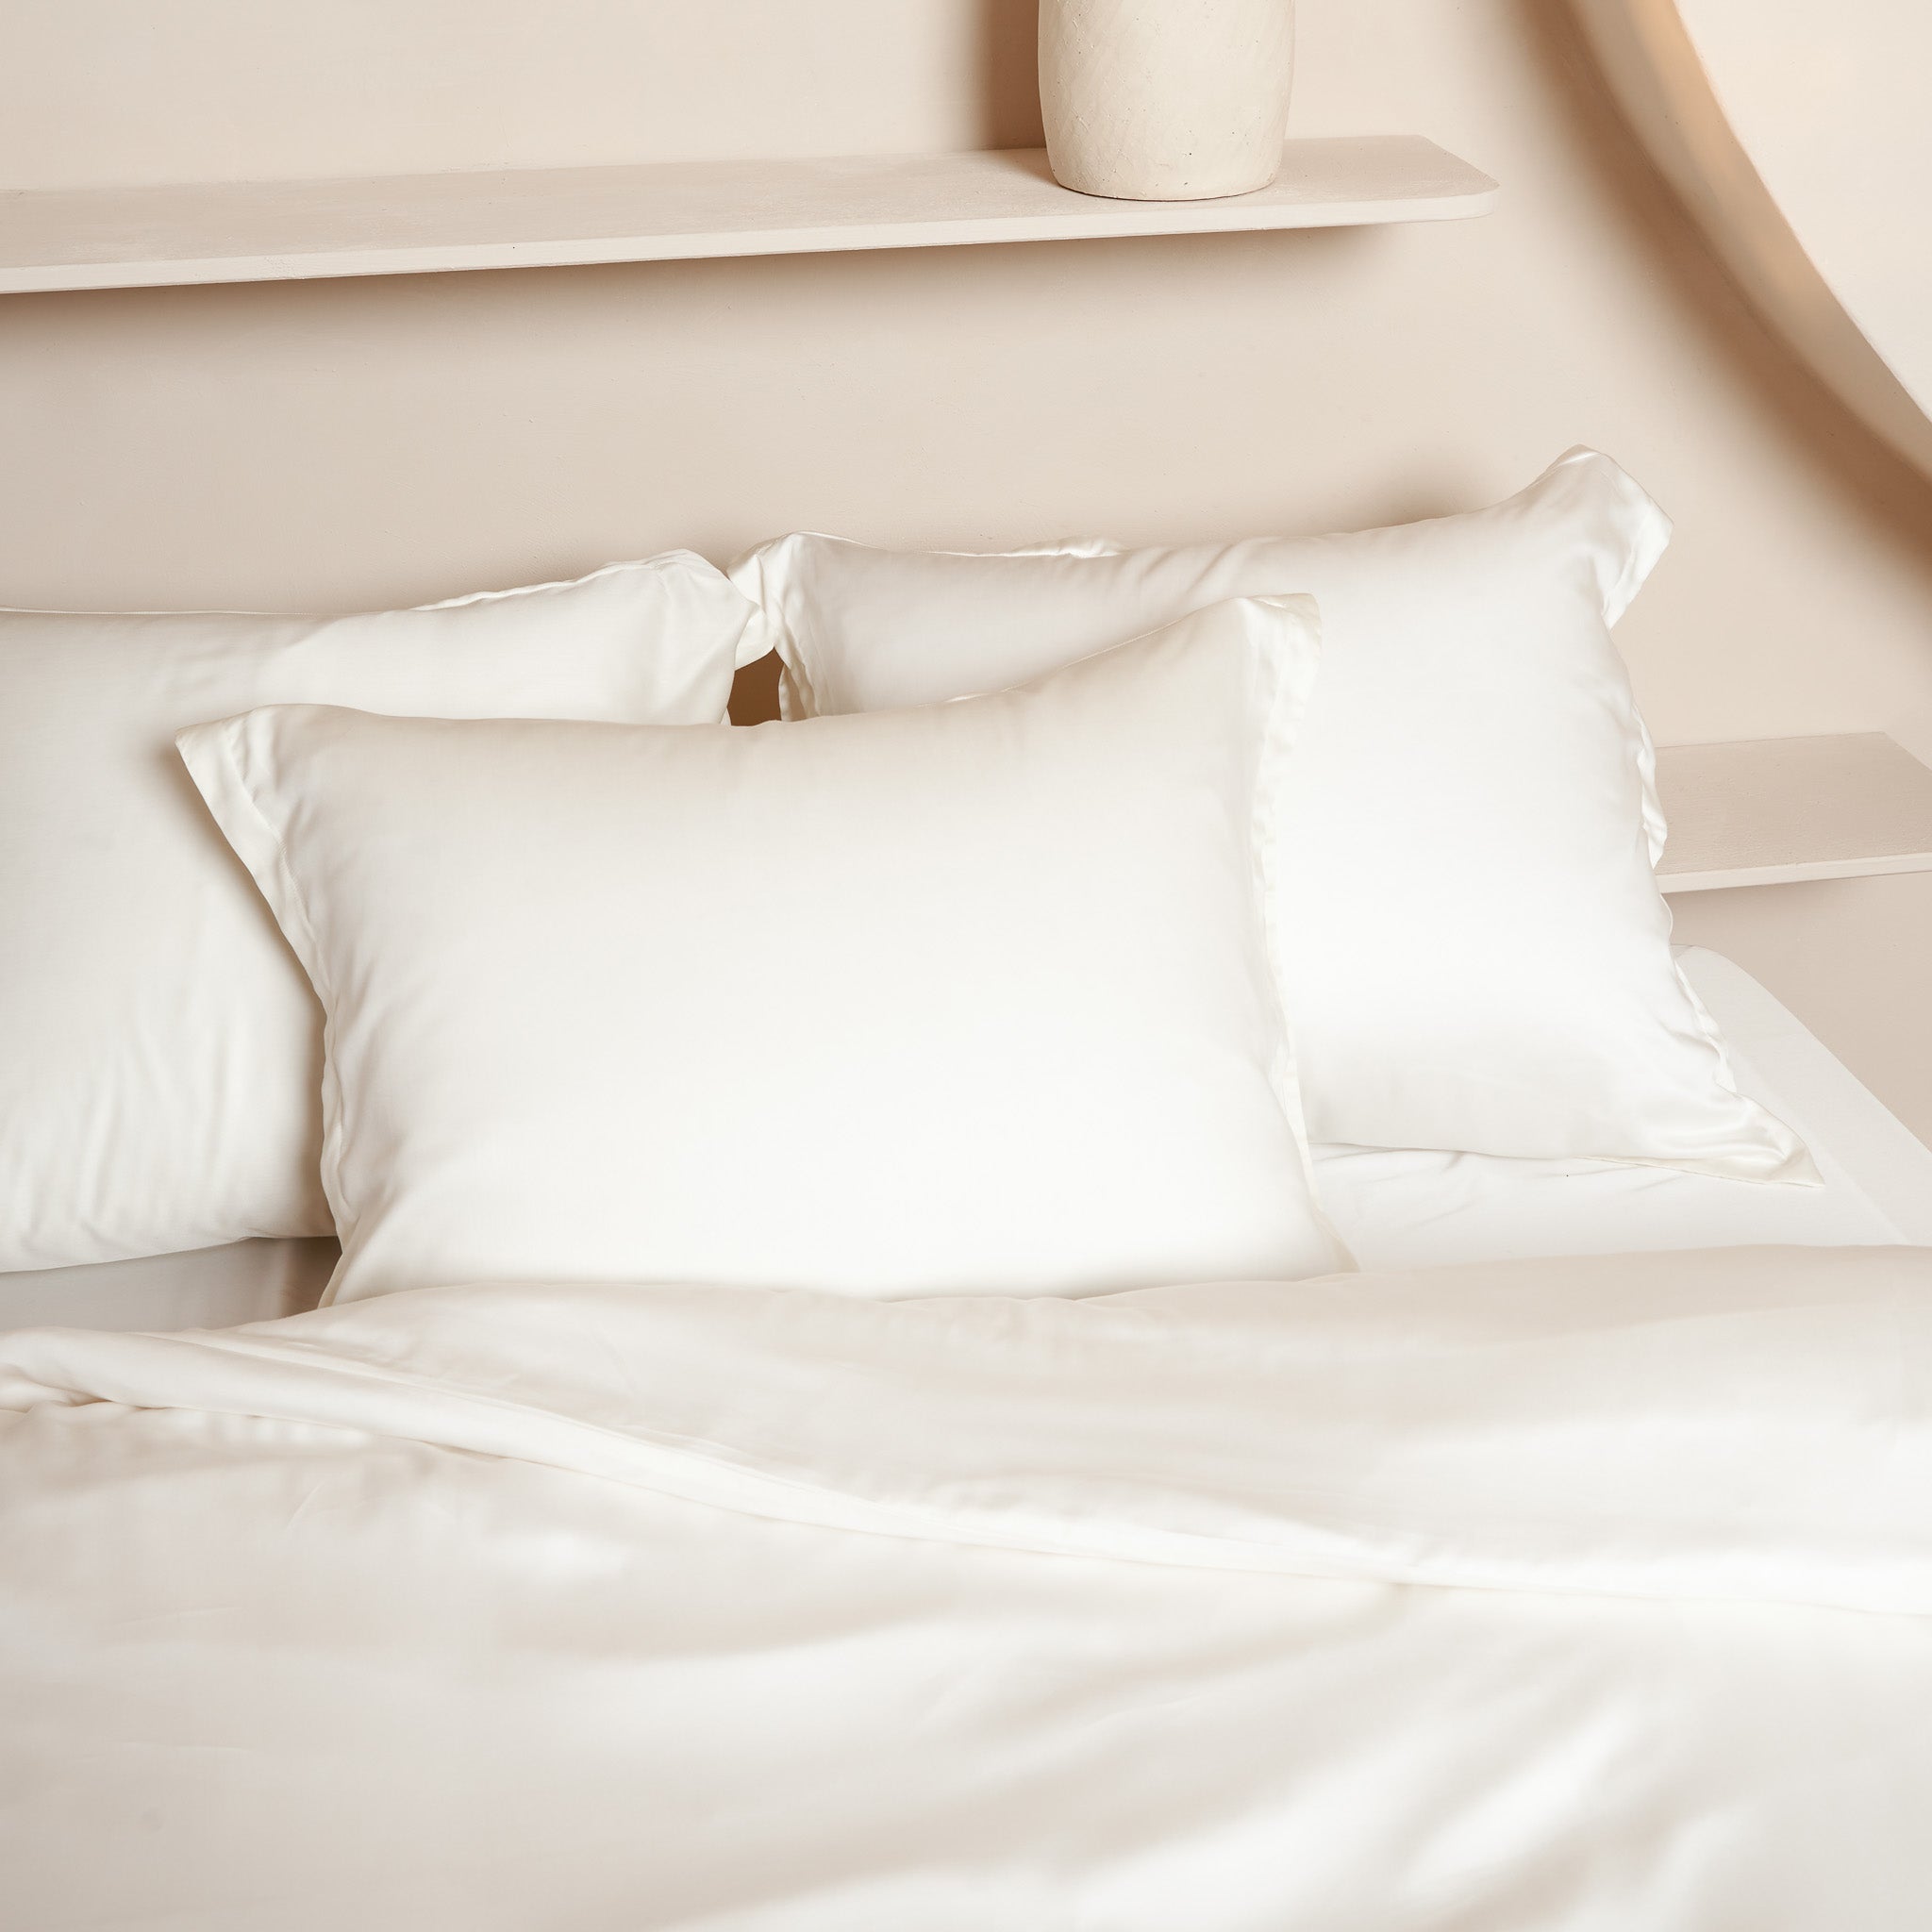 Kussenslopen in de kleur offwhite gemaakt van Tencel liggend op een opgemaakt bed